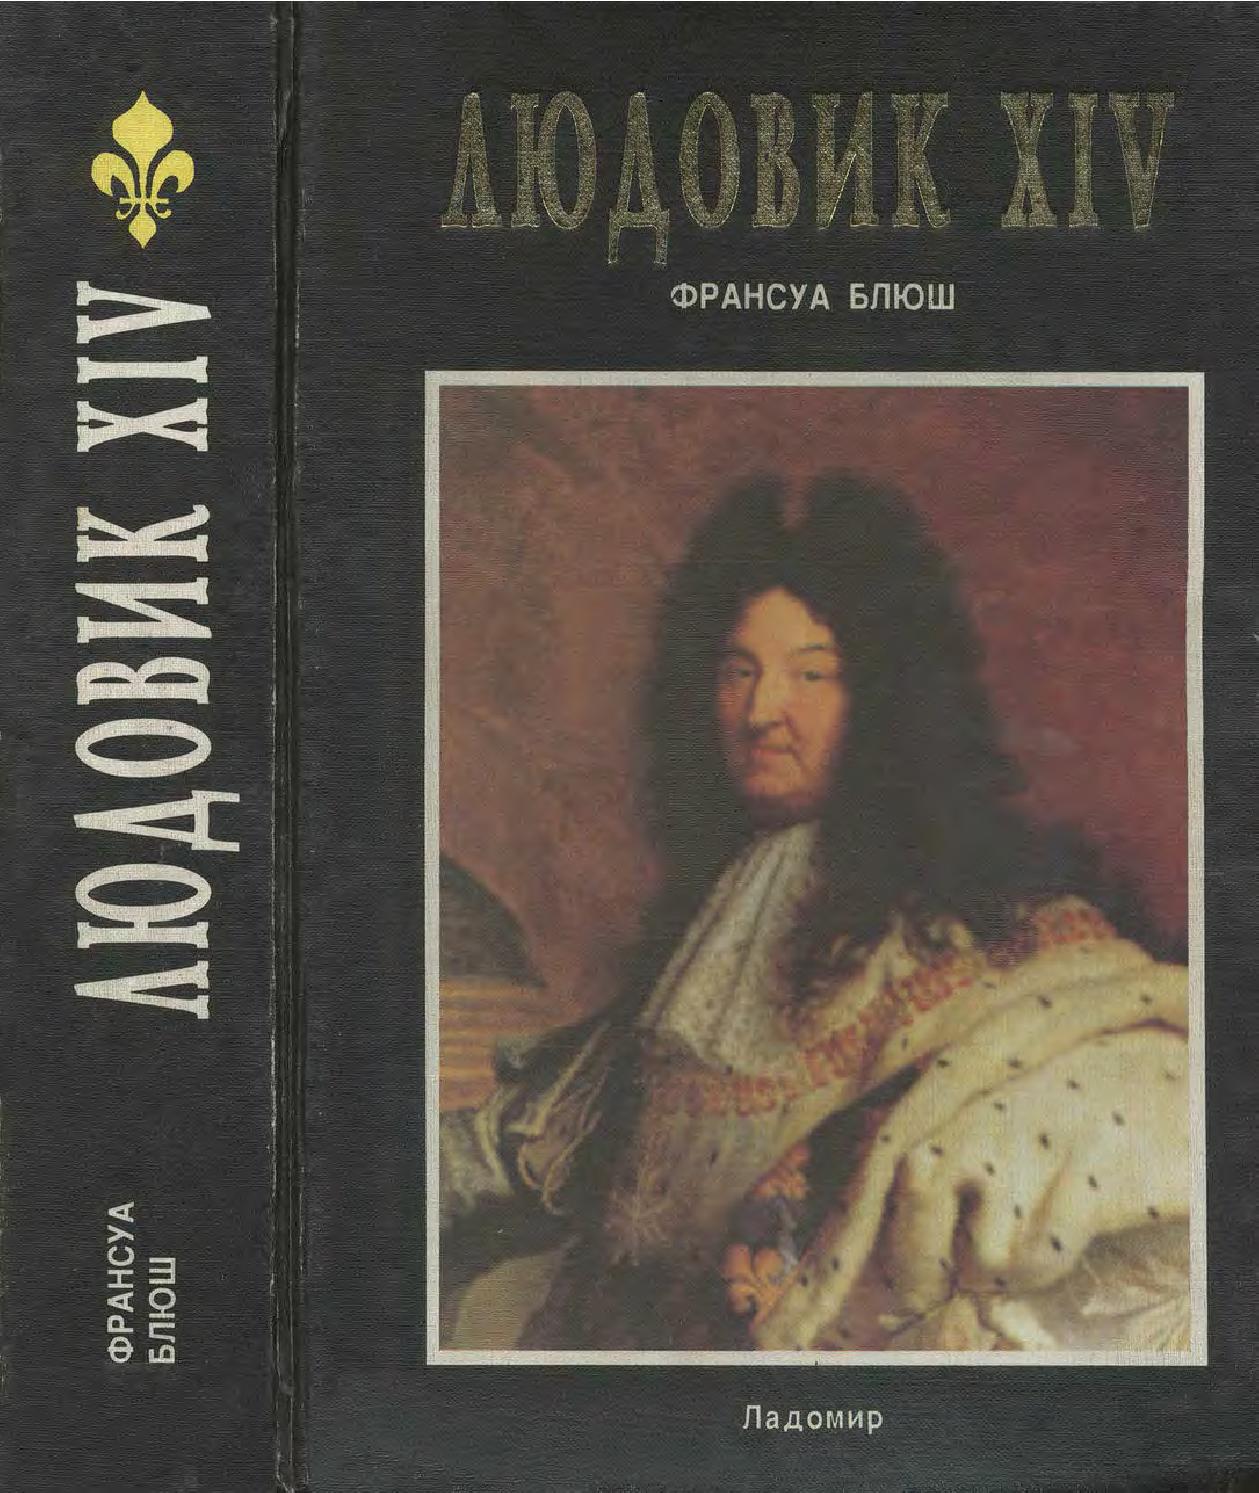 Людовик XIV. Часть-2, 1998, Блюш Франсуа